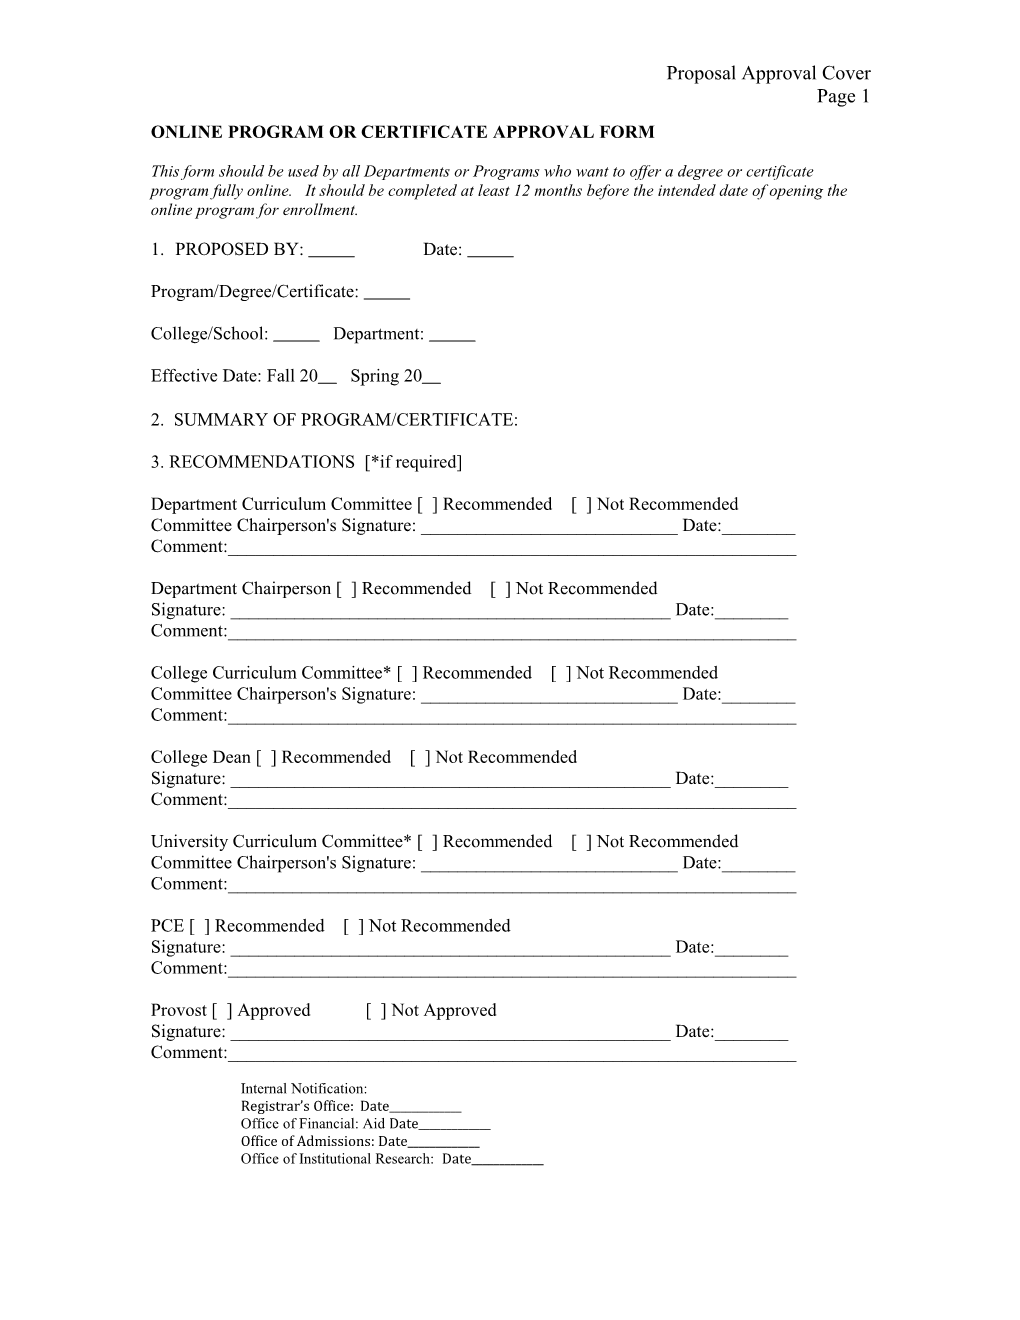 Online Program Or Certificate Approval Form Draft/Jr/8-13/09